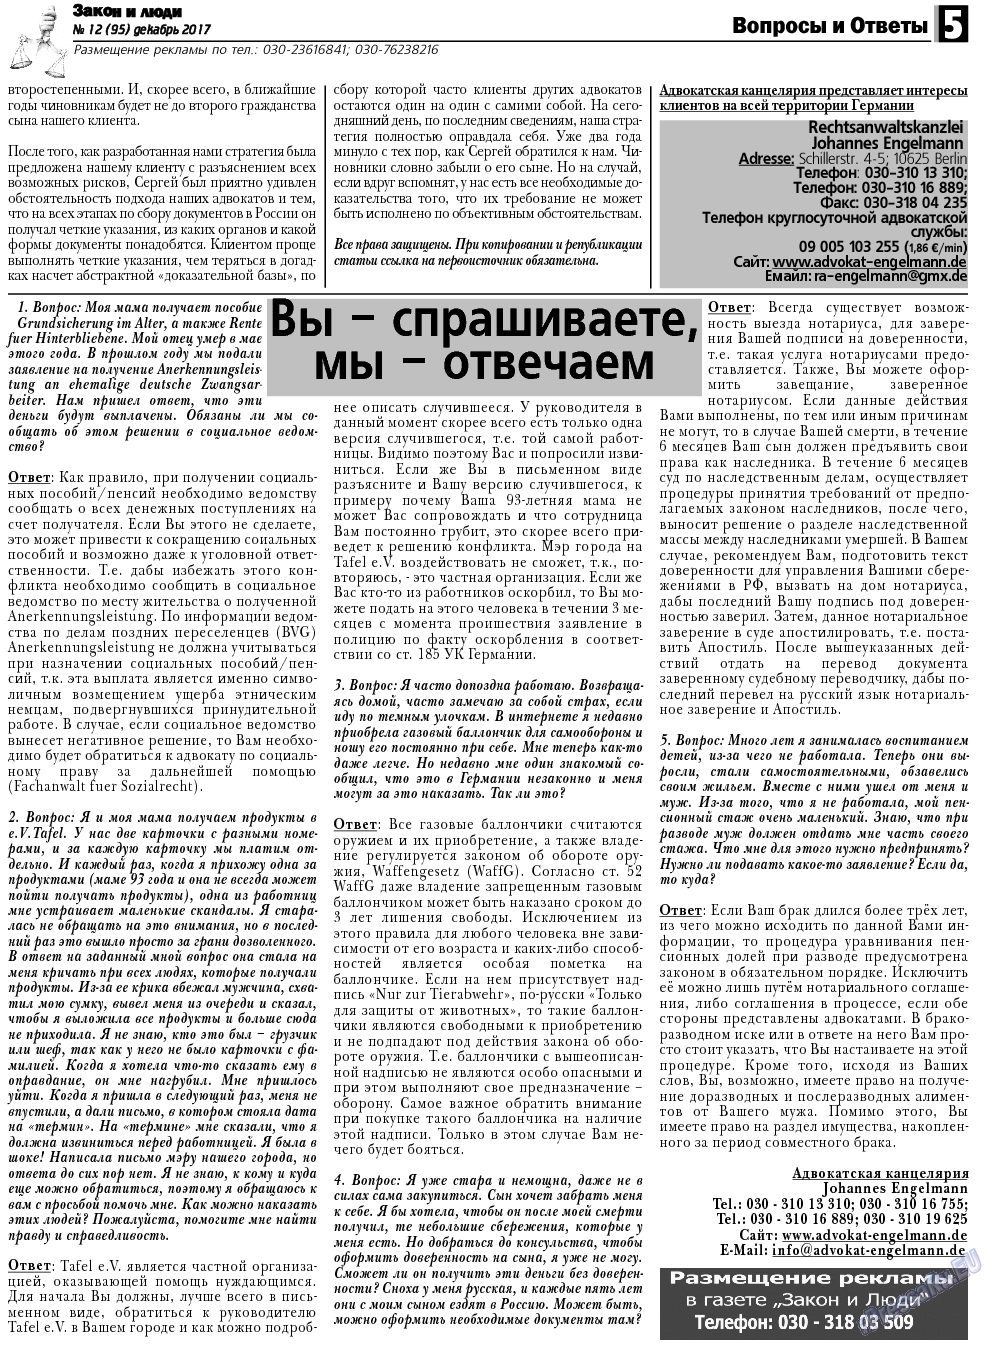 Закон и люди, газета. 2017 №12 стр.5